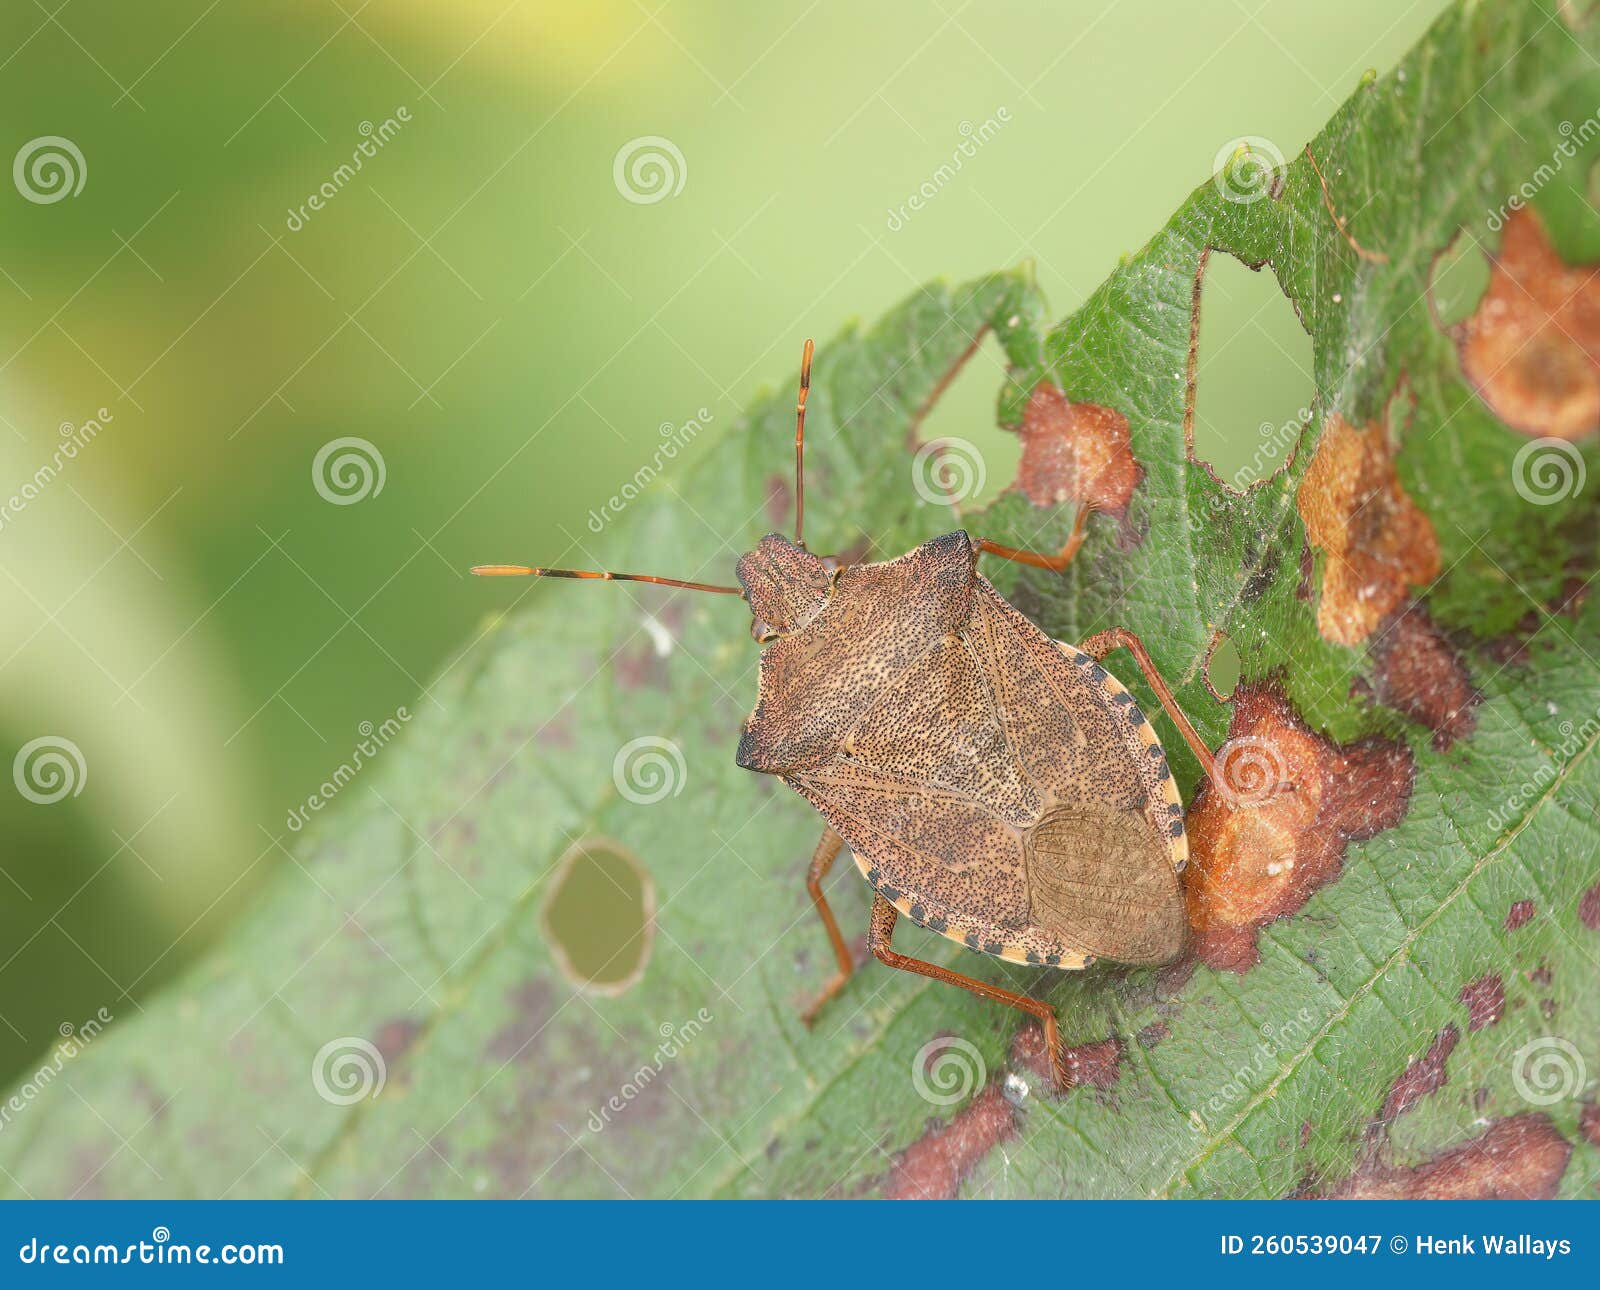 closeup on the brown dock leaf bug, arma custos sitting on a leaf